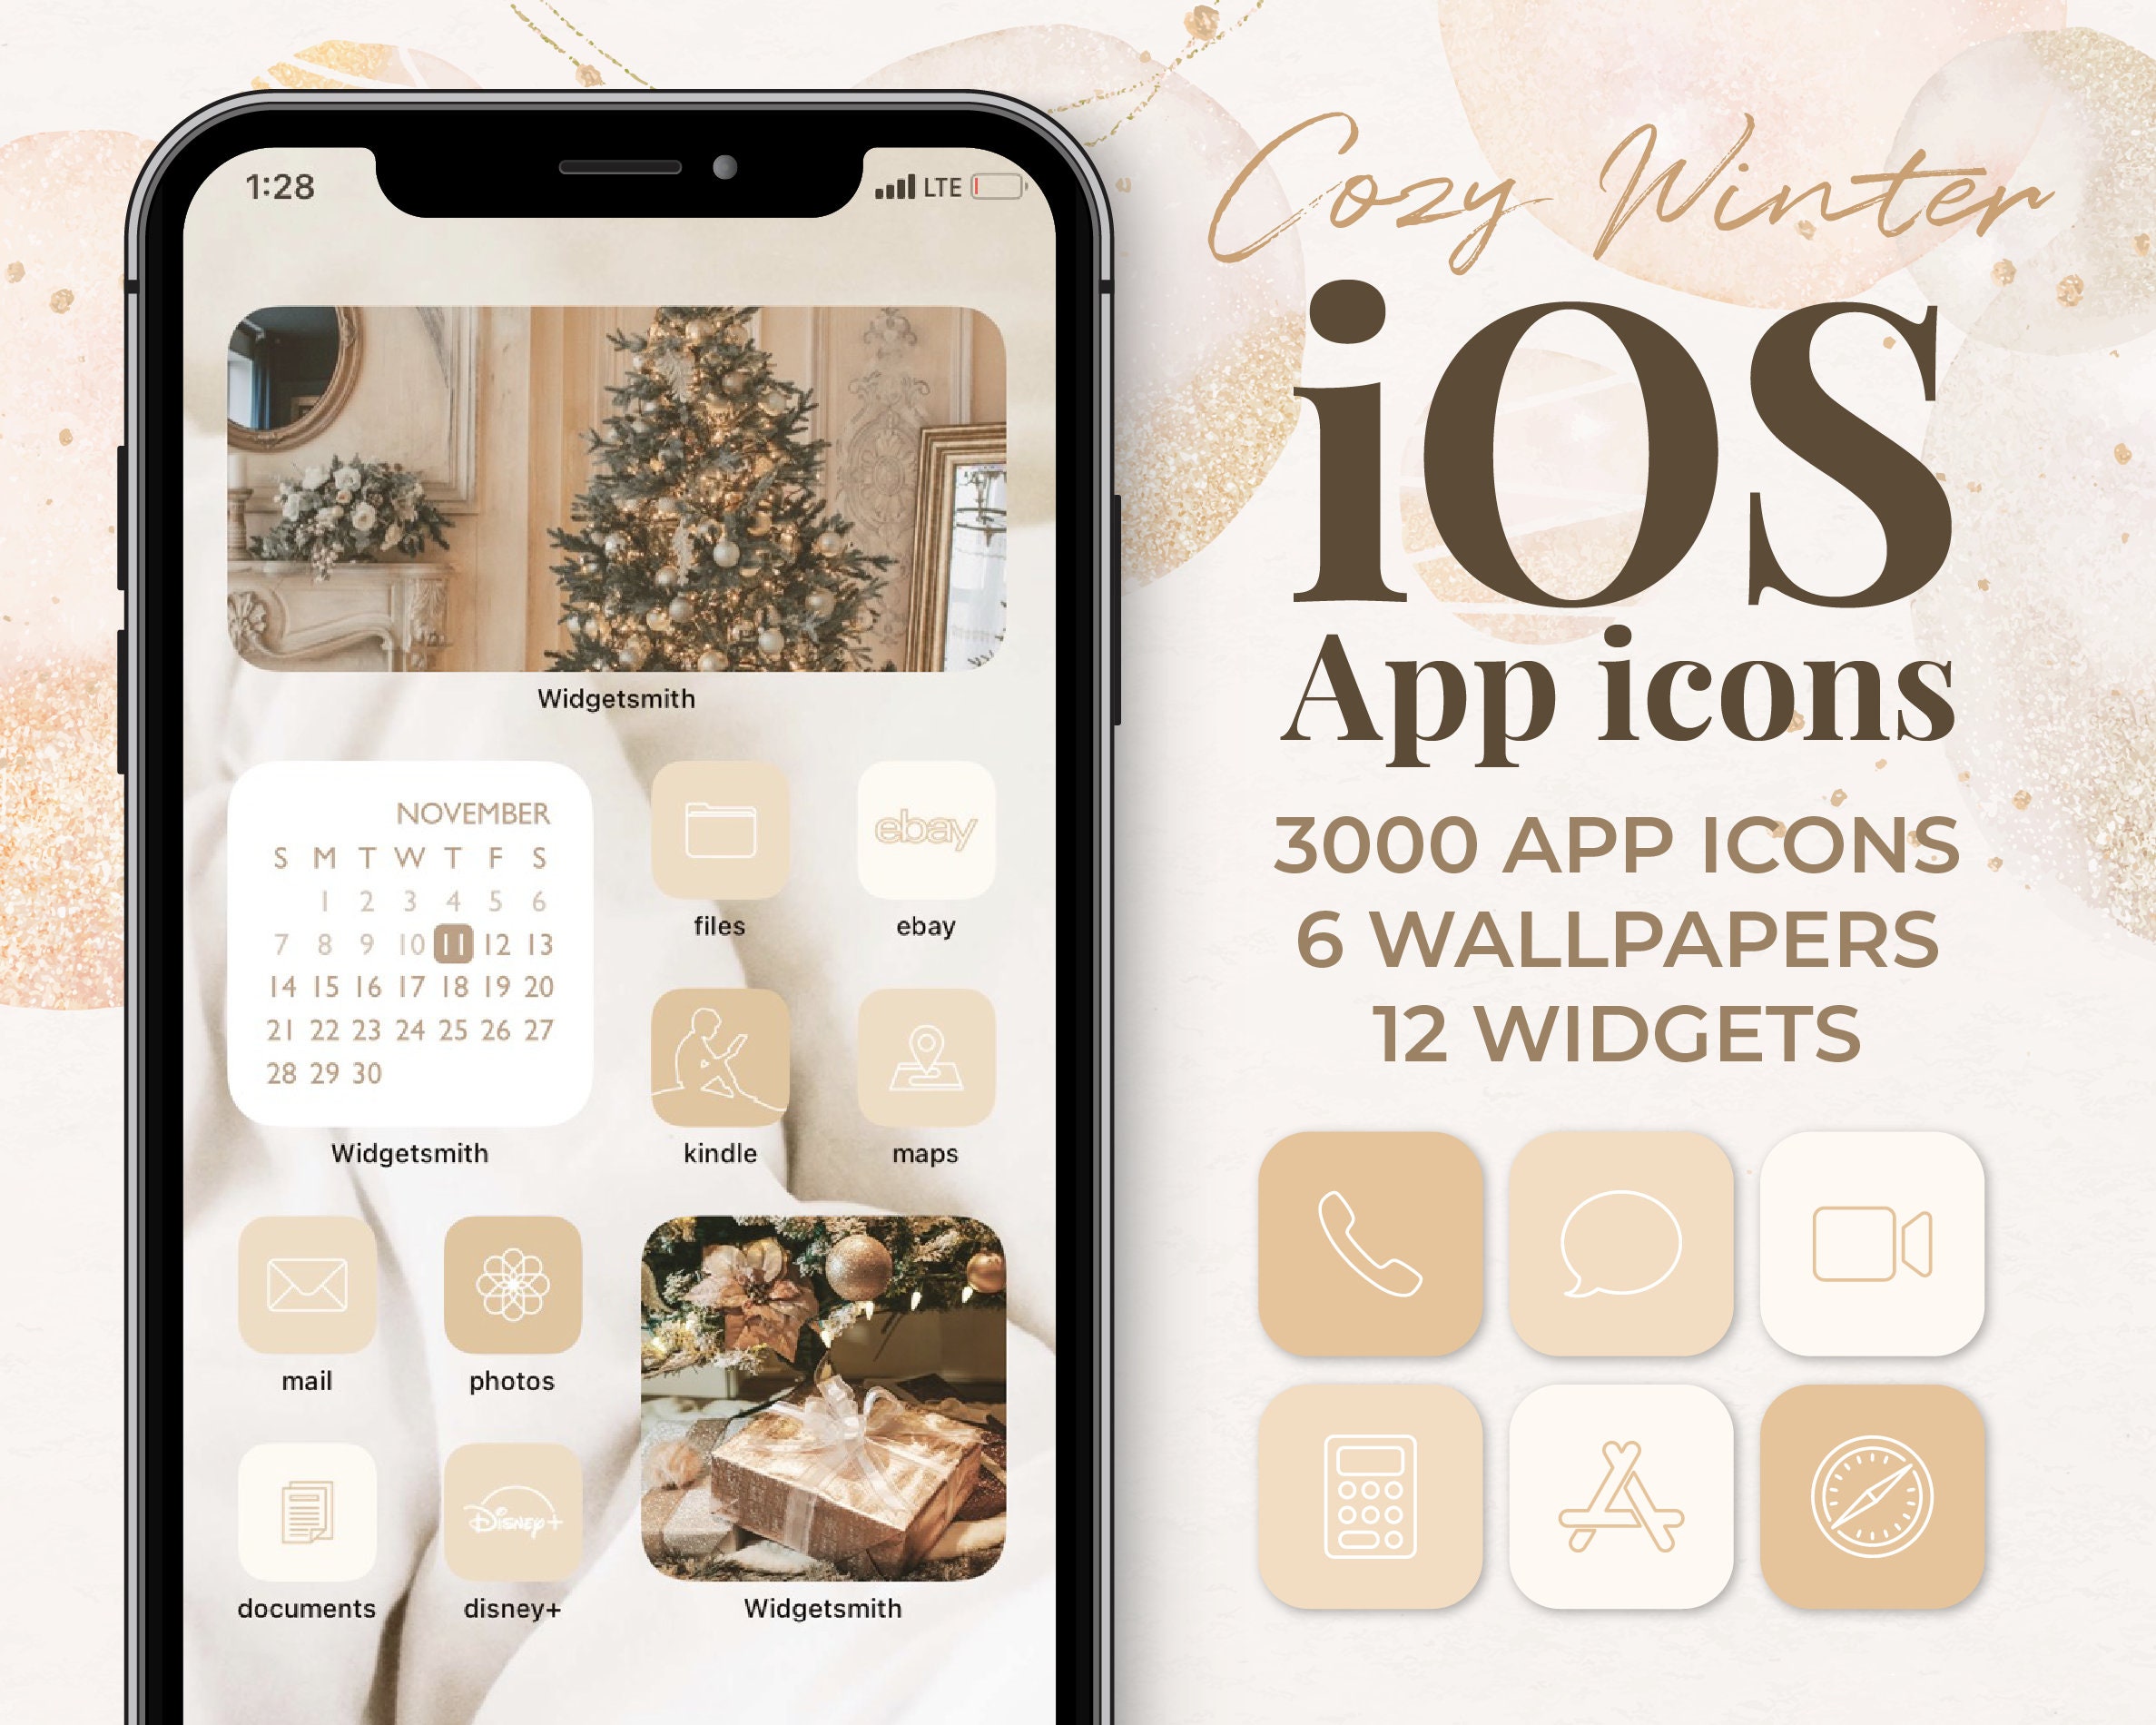 Weihnachten Gemütlich Winter iOS App Icons Aesthetic Beige 3000 iPhone  Icons, Wallpapers, Photo Widgets Pack - Etsy.de